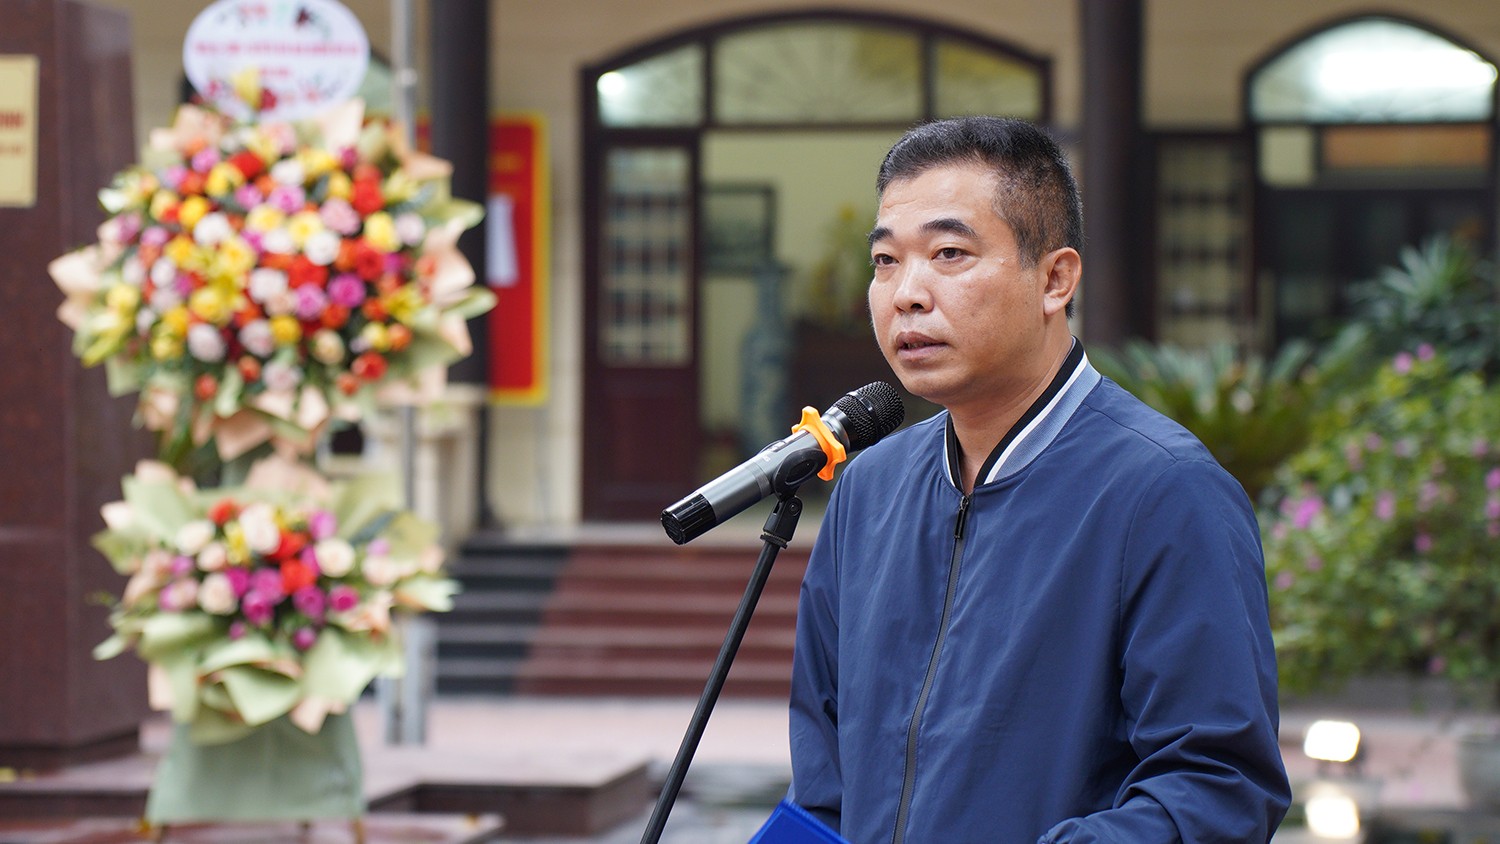 Đồng chí Phạm Quốc Việt - Ủy viên Thường vụ, Chủ tịch Ủy ban MTTQ phường Kim Liên báo cáo quá trình triển khai tranh tường bích họa